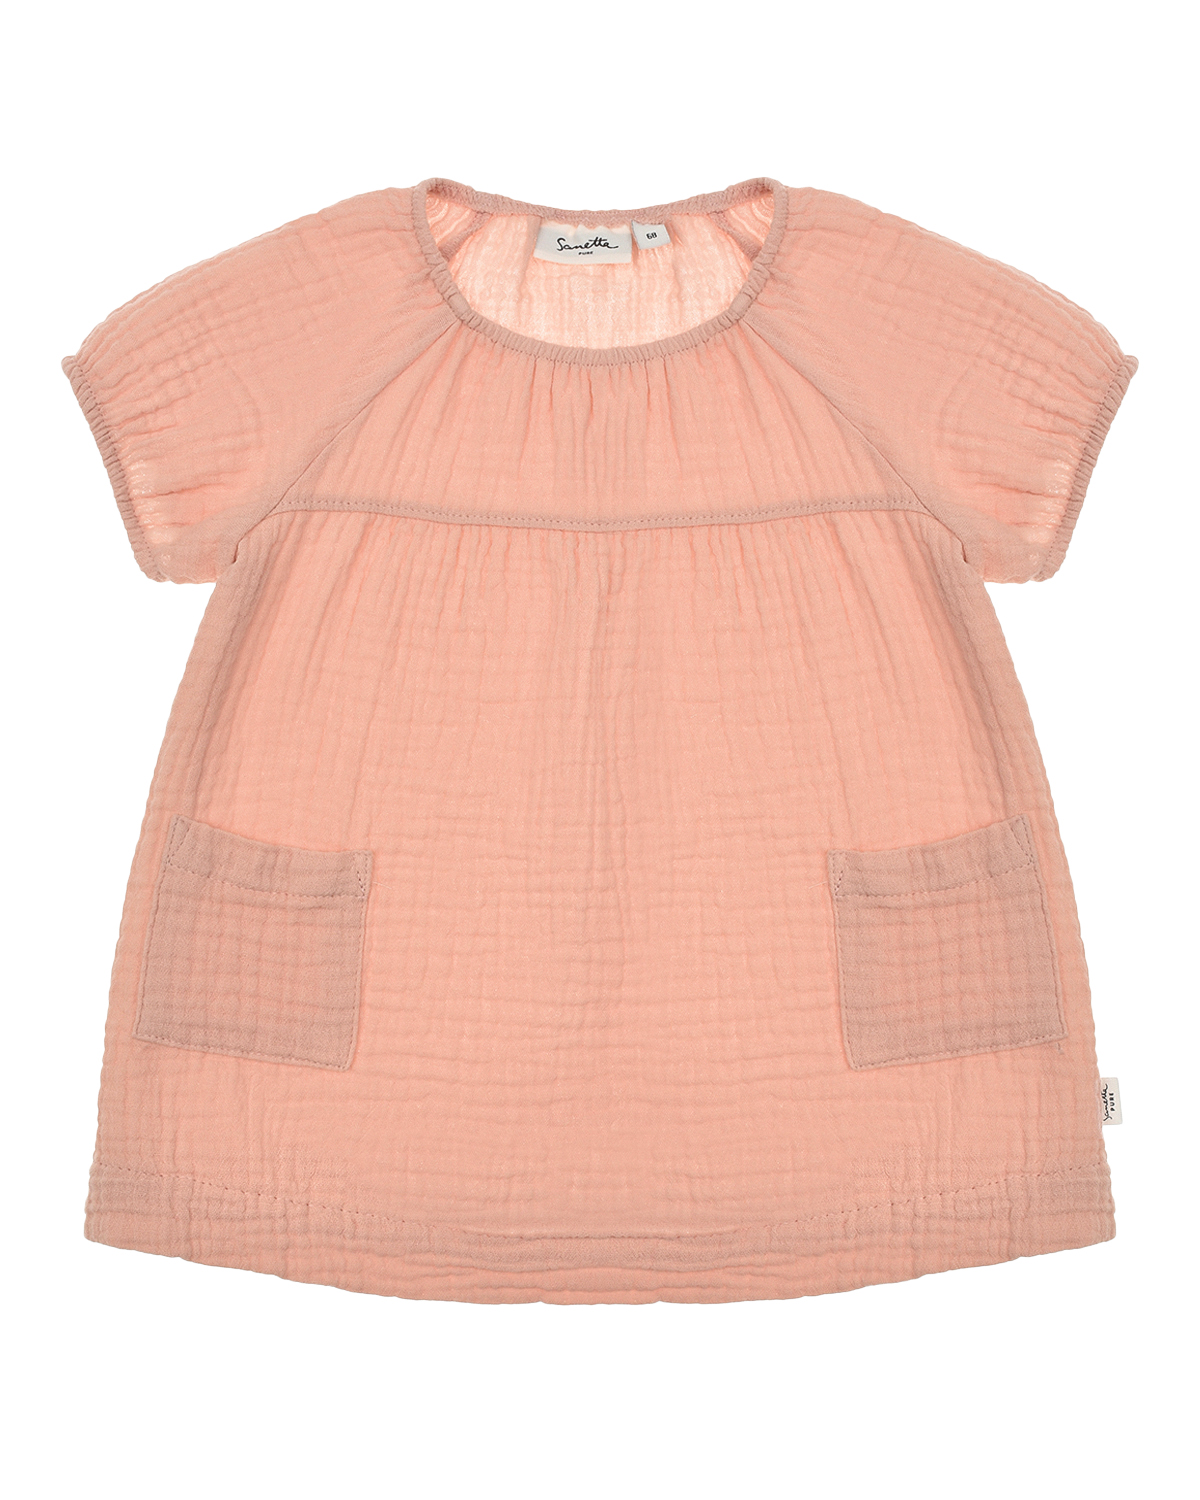 Платье с короткими рукавами-реглан Sanetta Pure детское, размер 68, цвет розовый - фото 1